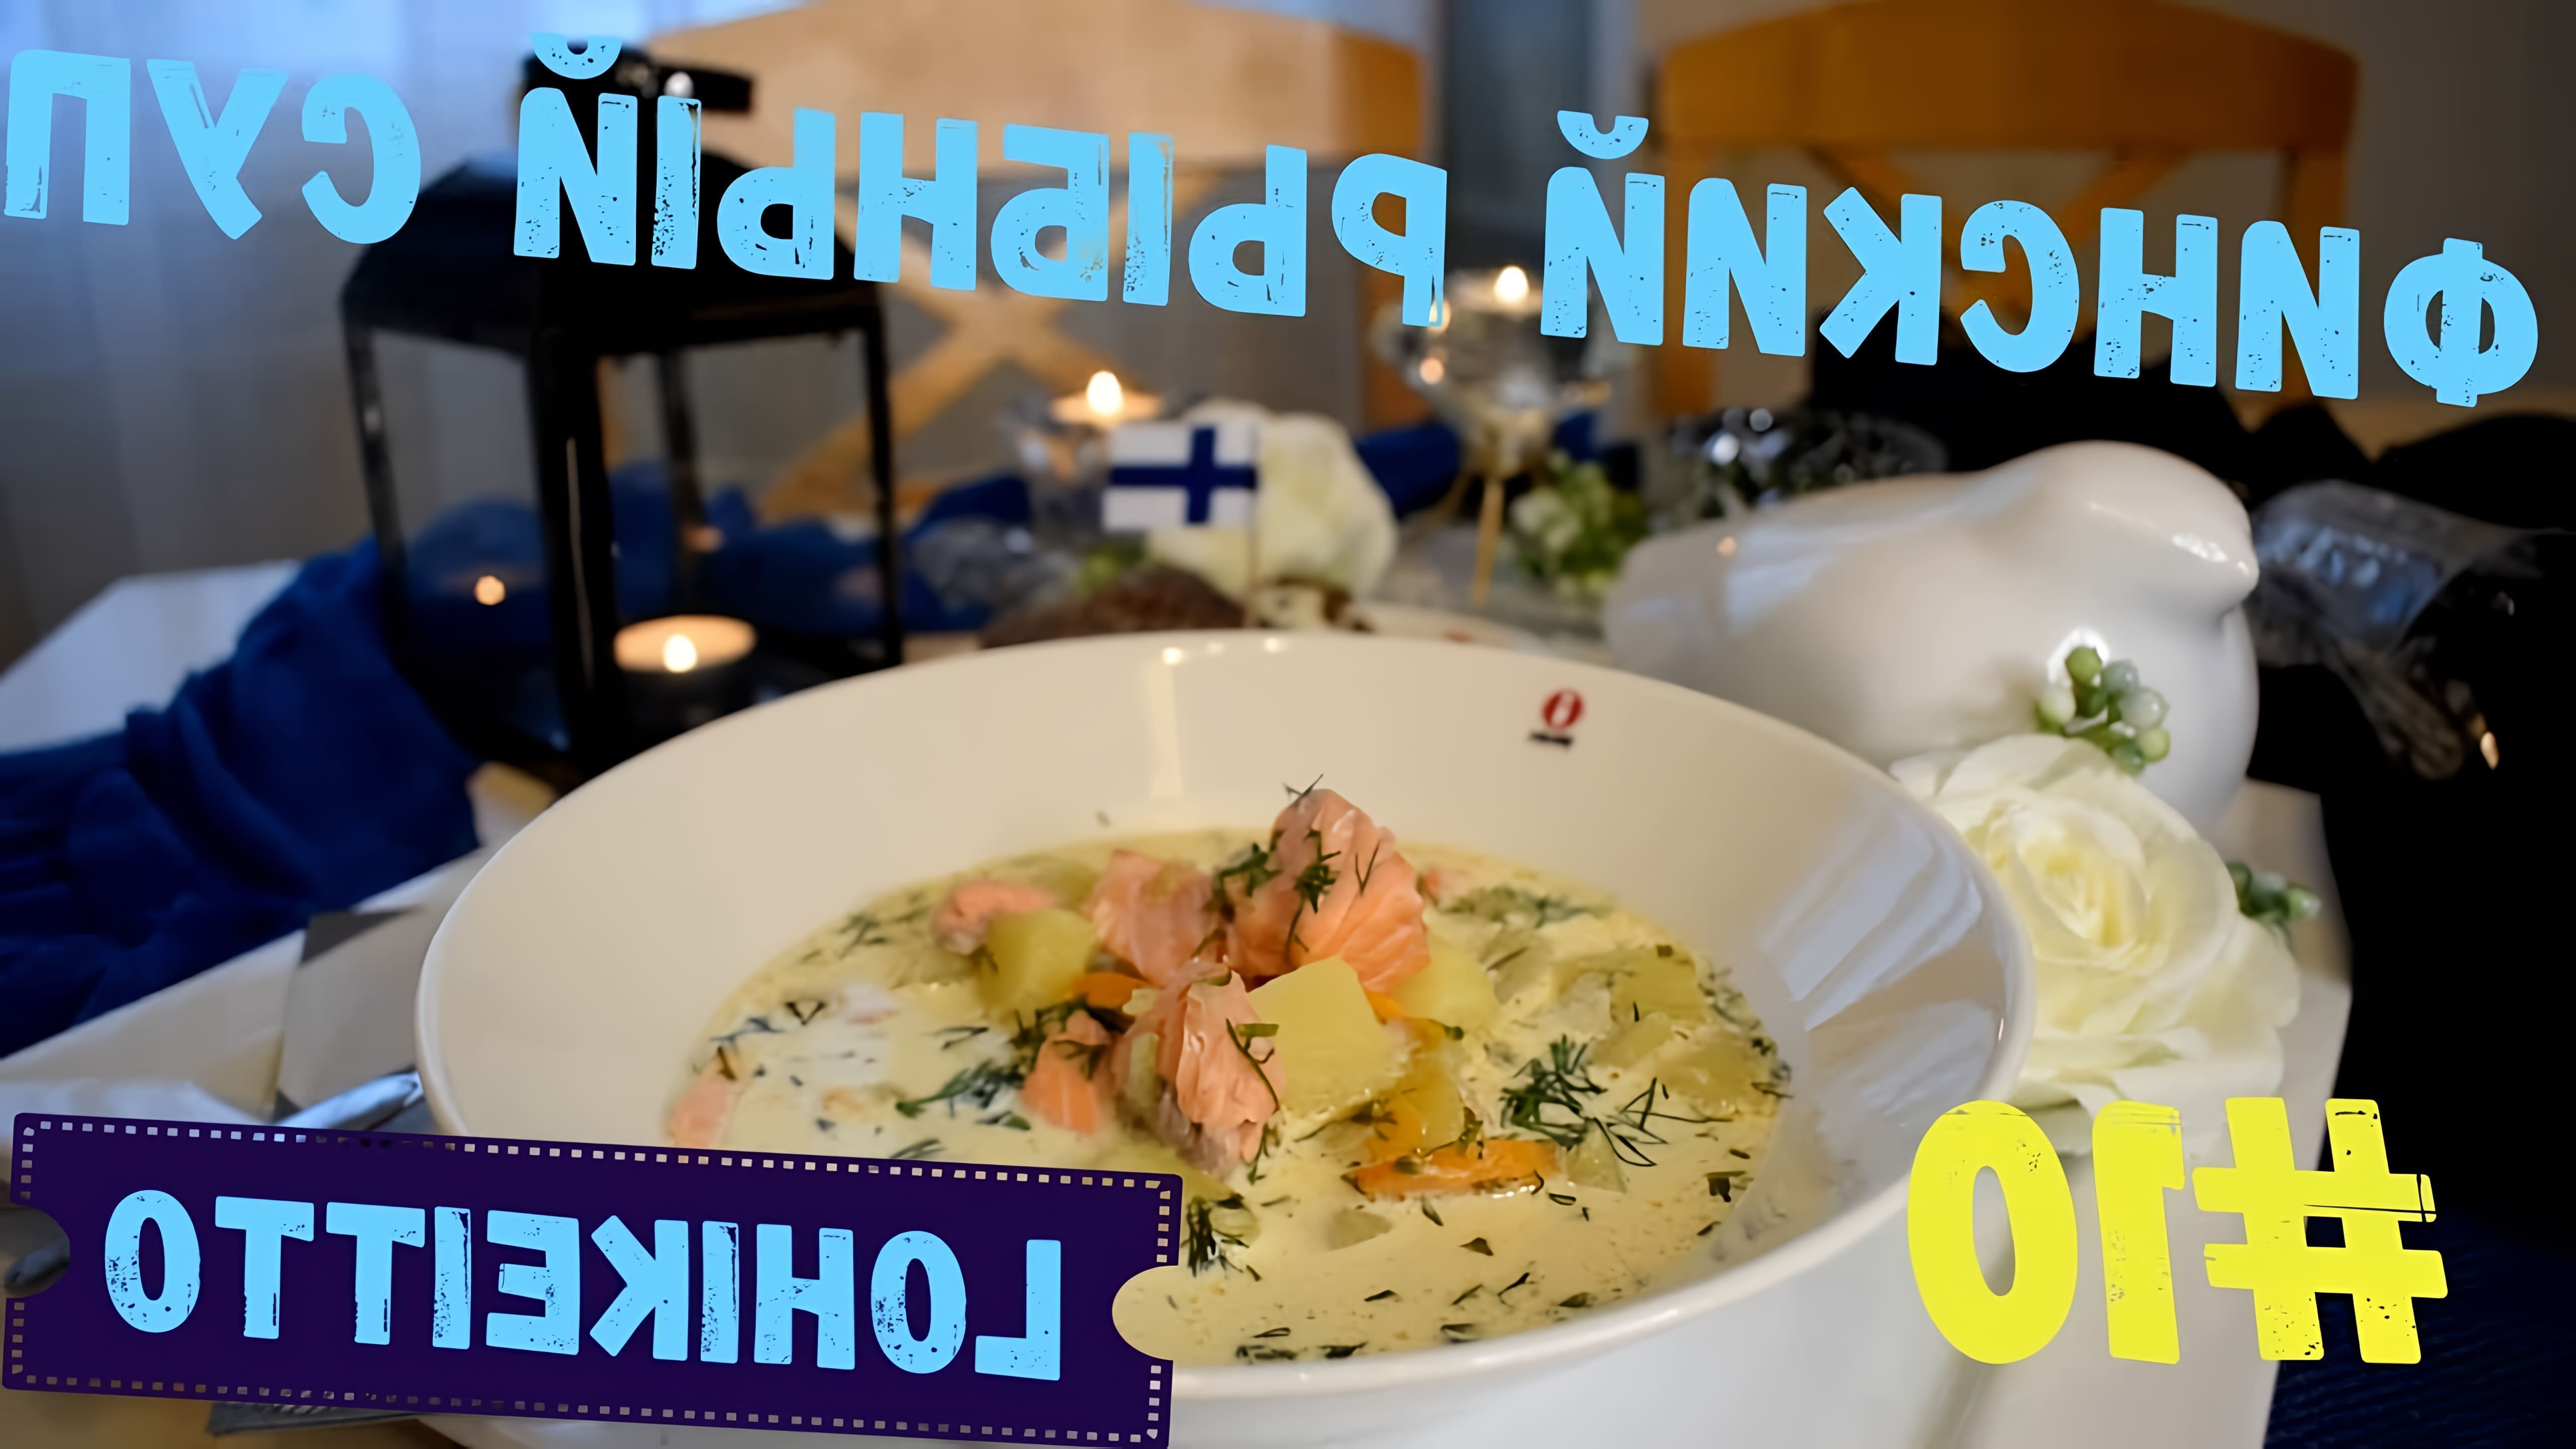 В этом видео финский повар делится рецептом своего любимого супа - финского рыбного супа с лососем